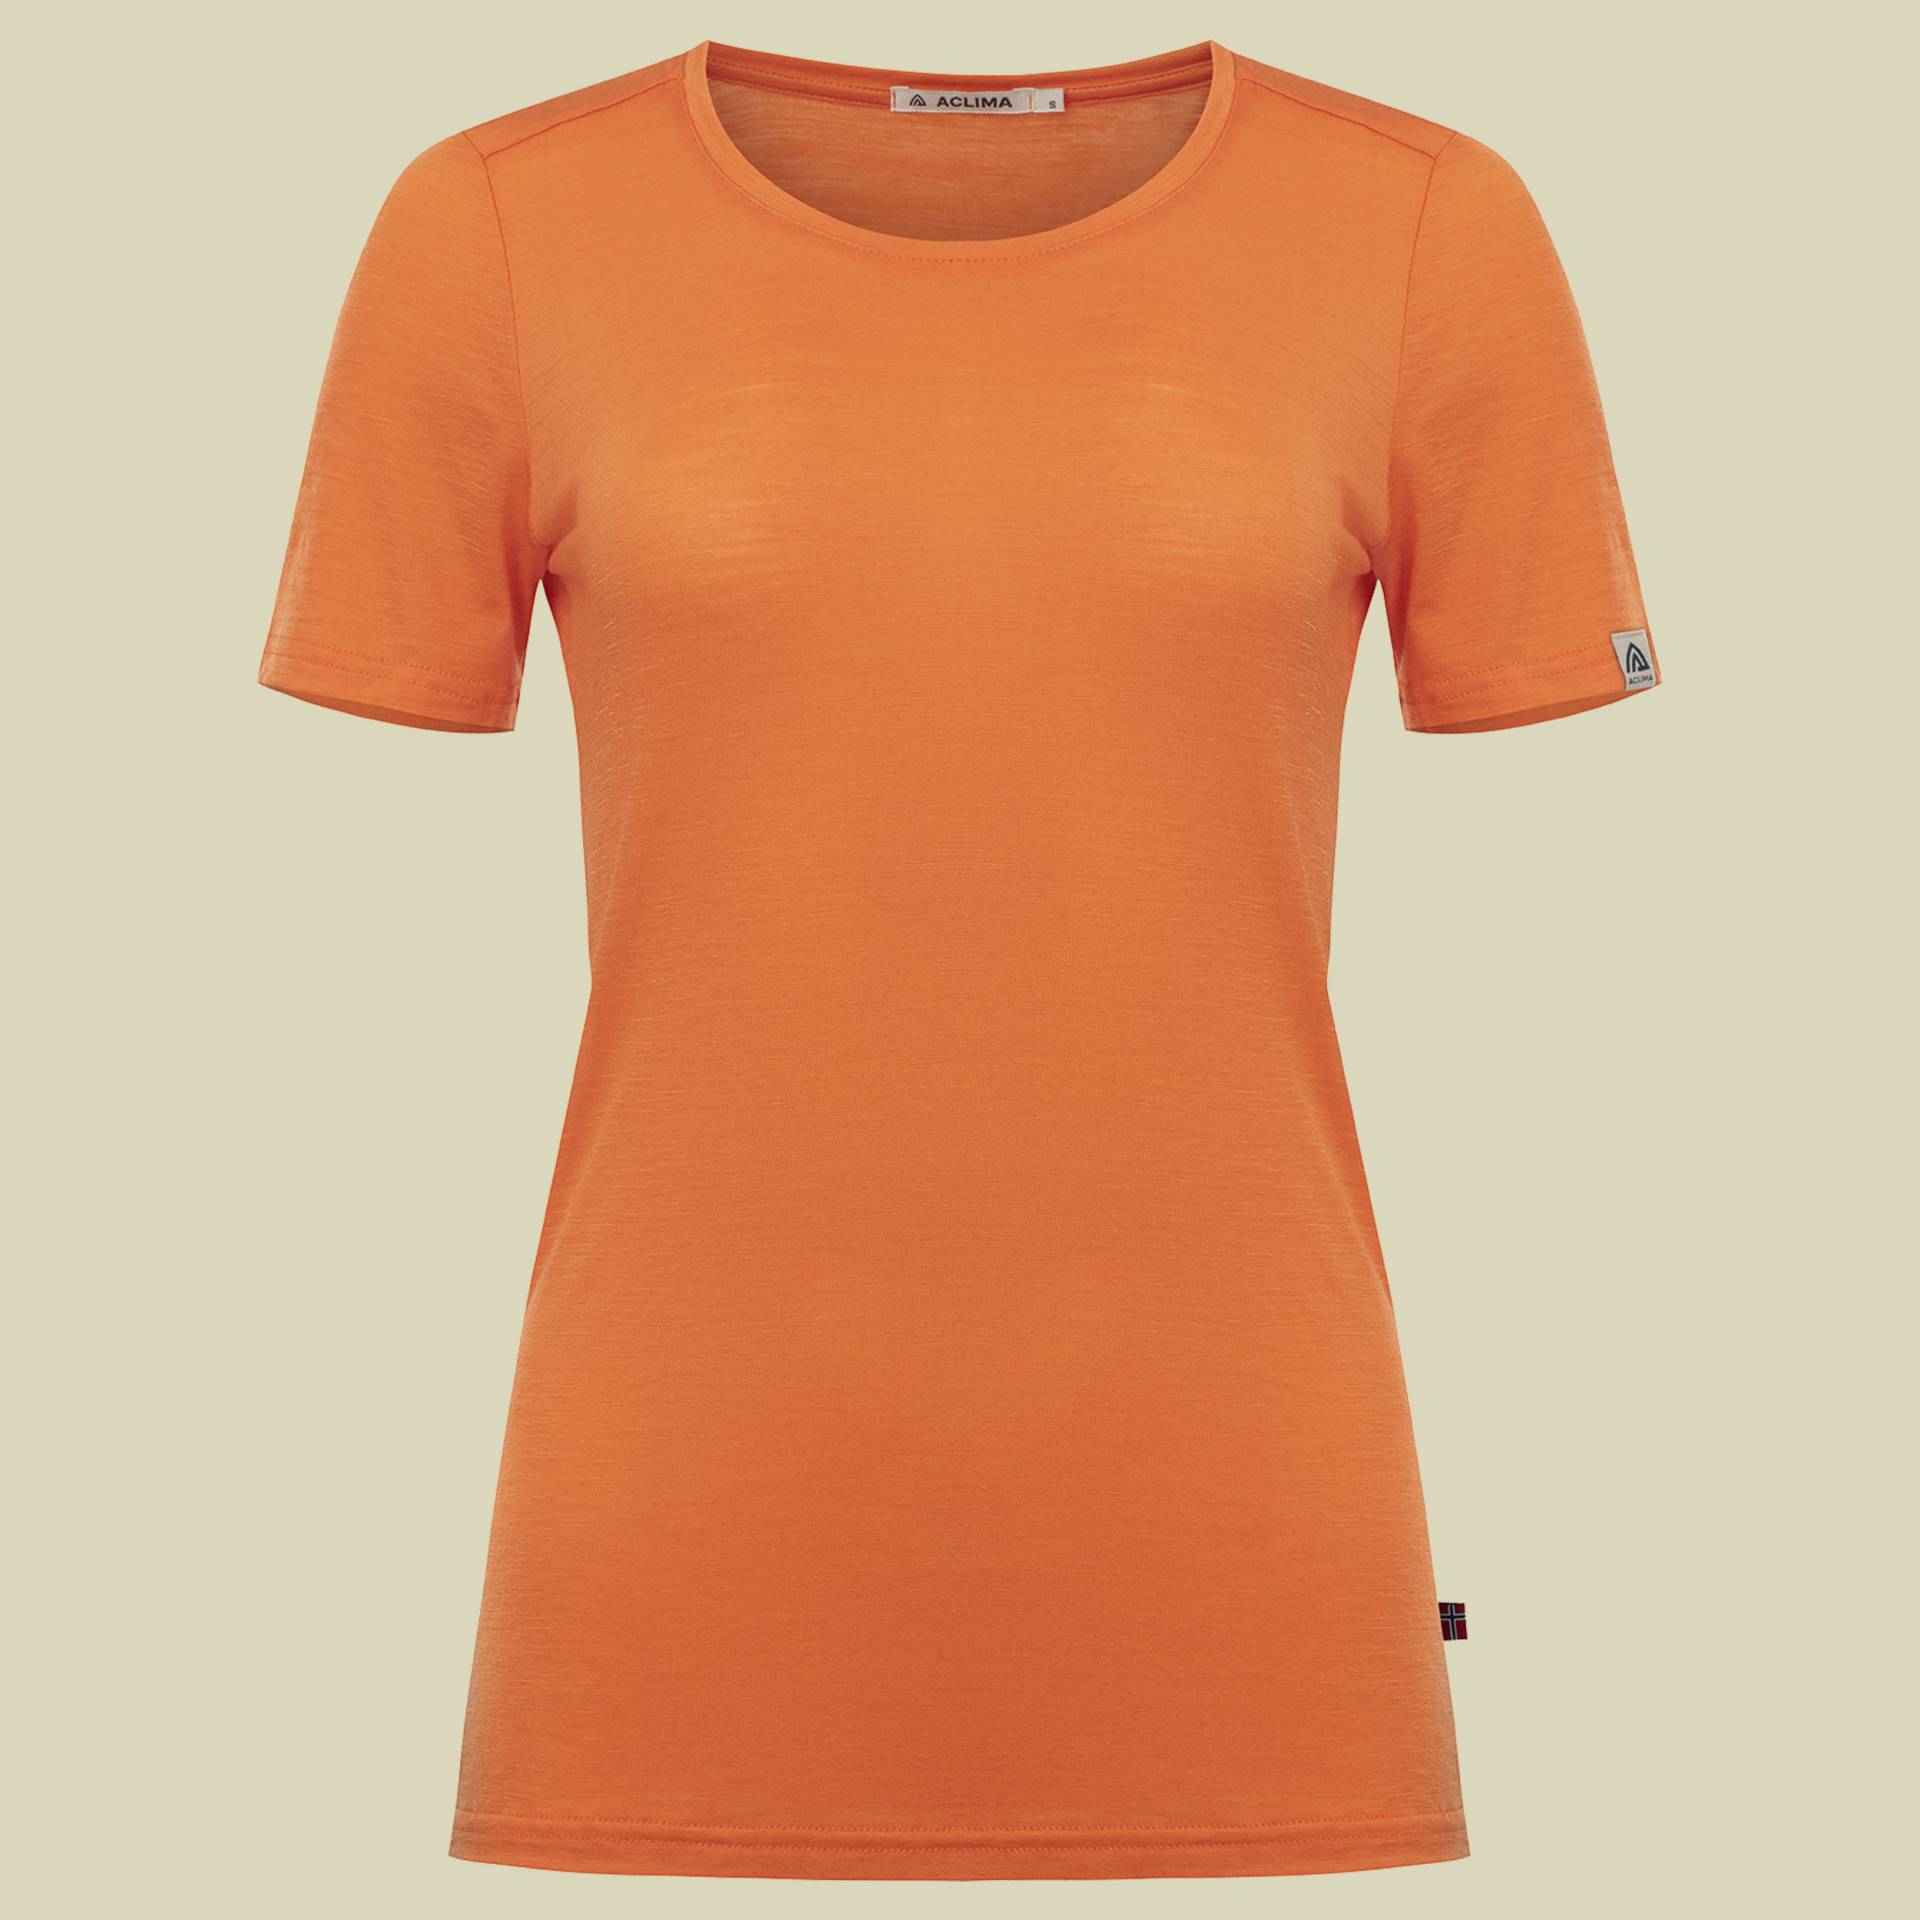 LightWool T-Shirt Women orange L - orange tiger von aclima